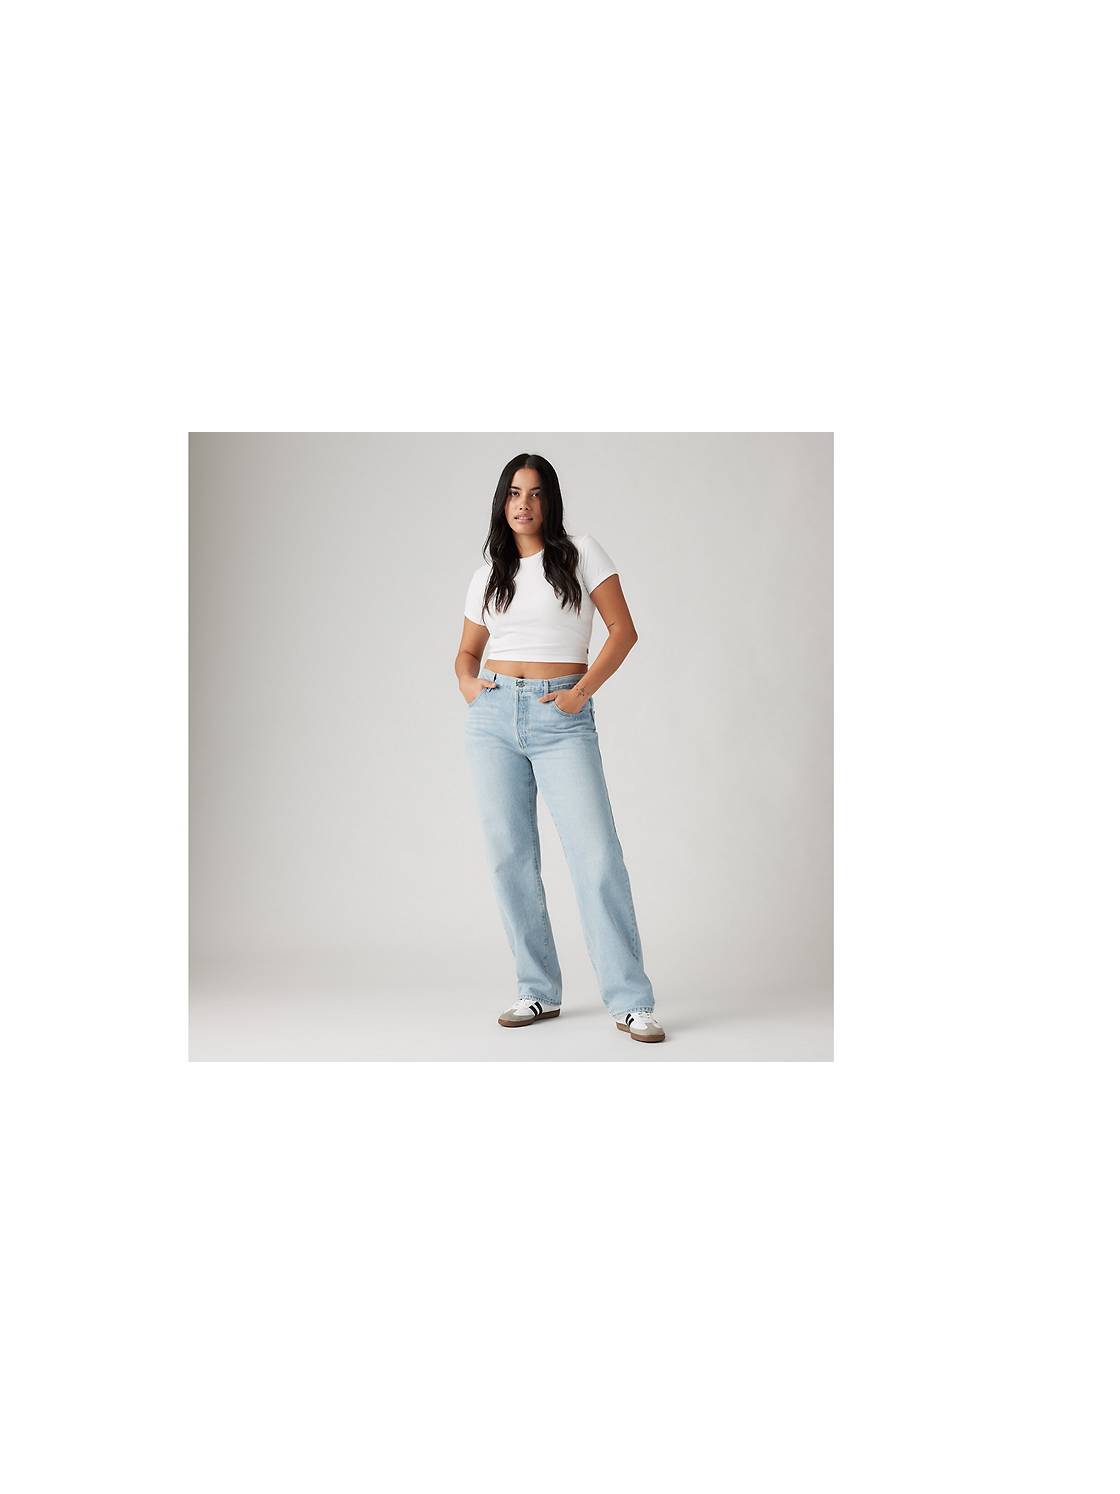 Buy ZRI Straight-Leg & High Waisted Jeans for Women Online